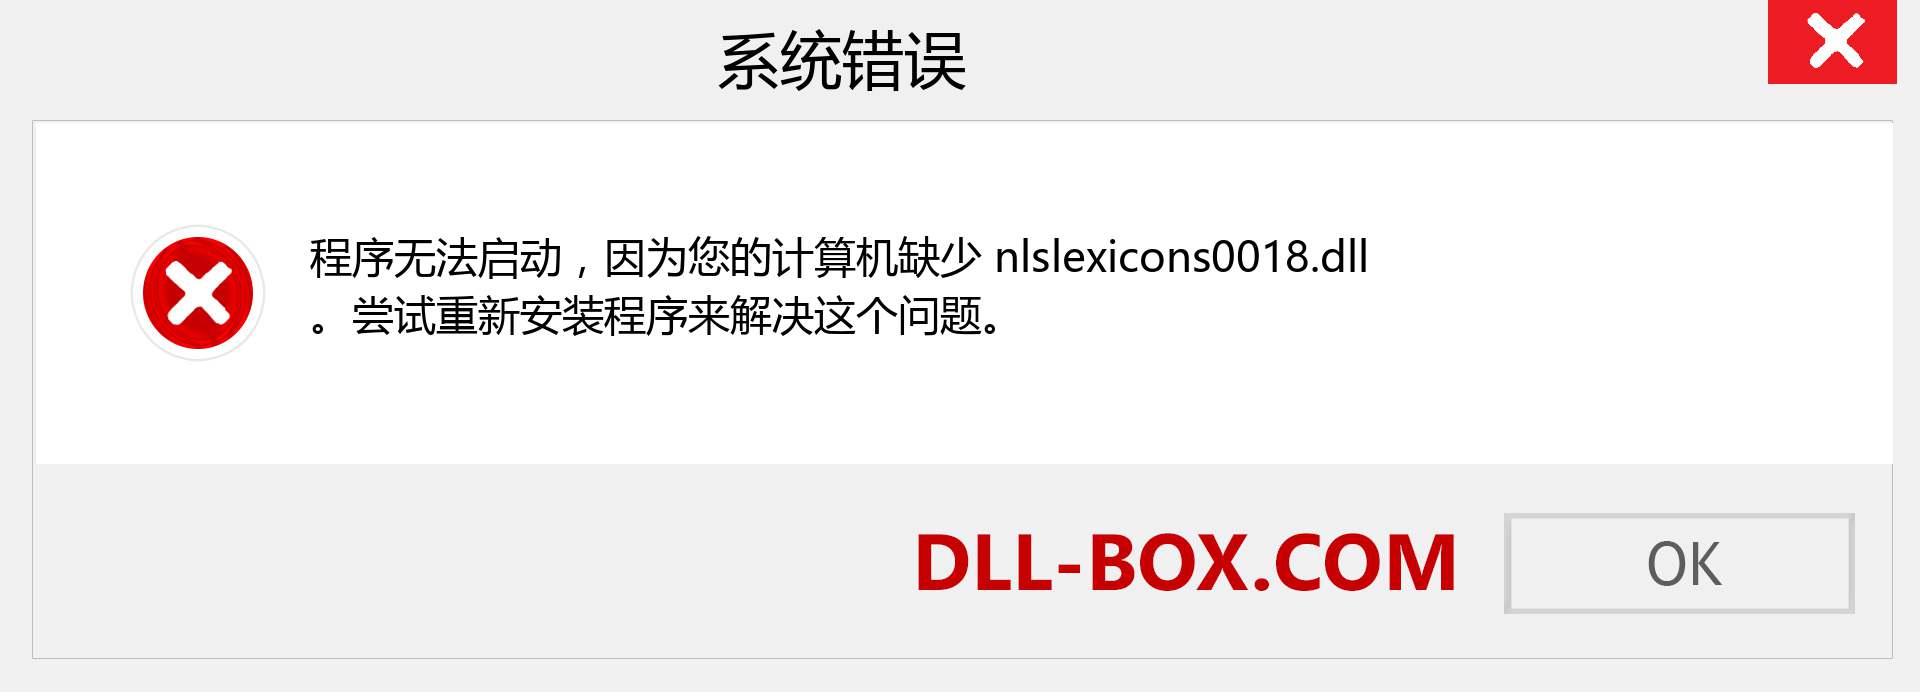 nlslexicons0018.dll 文件丢失？。 适用于 Windows 7、8、10 的下载 - 修复 Windows、照片、图像上的 nlslexicons0018 dll 丢失错误